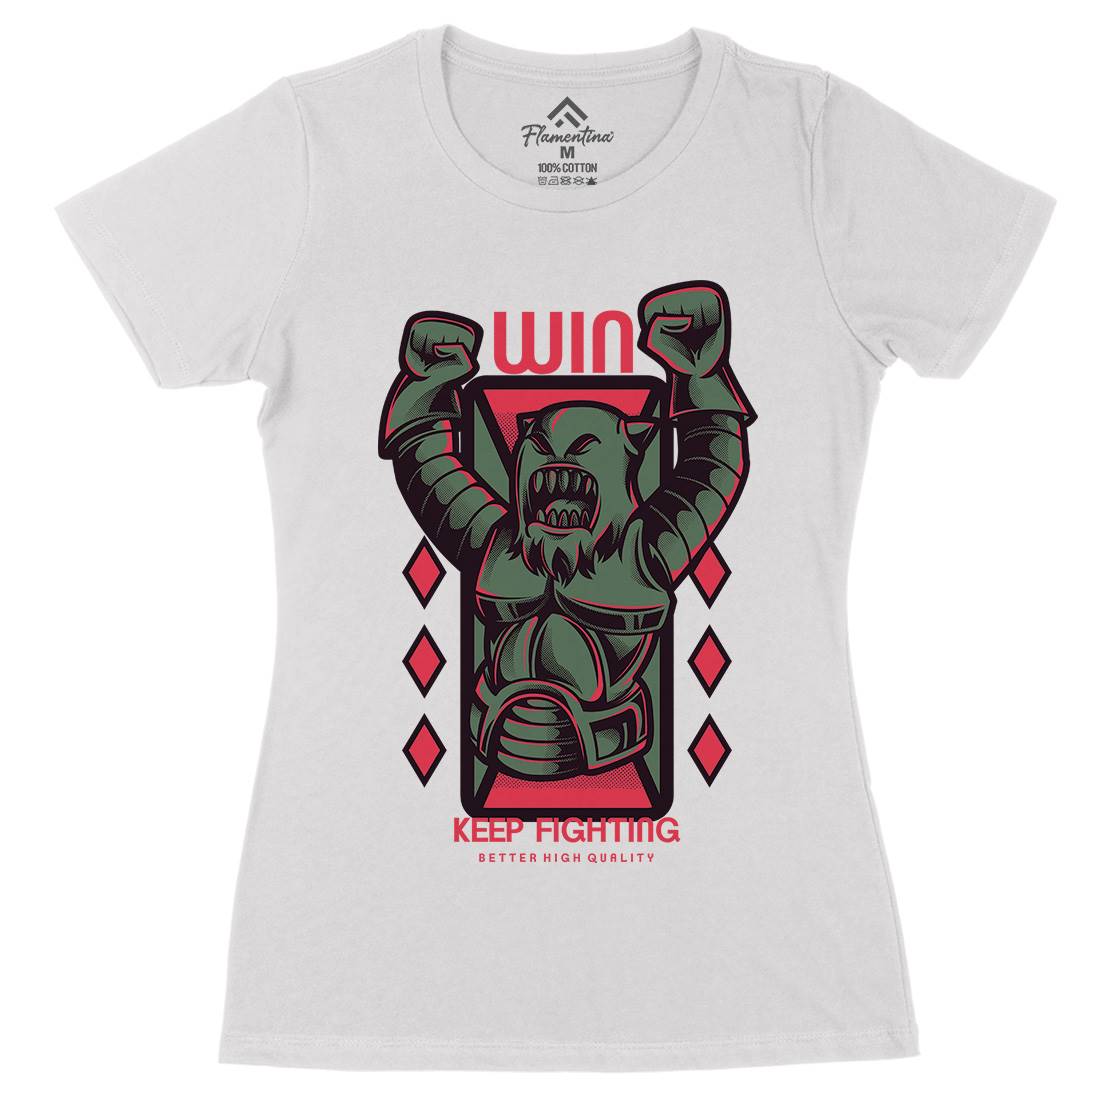 Win Fight Womens Organic Crew Neck T-Shirt Warriors D883